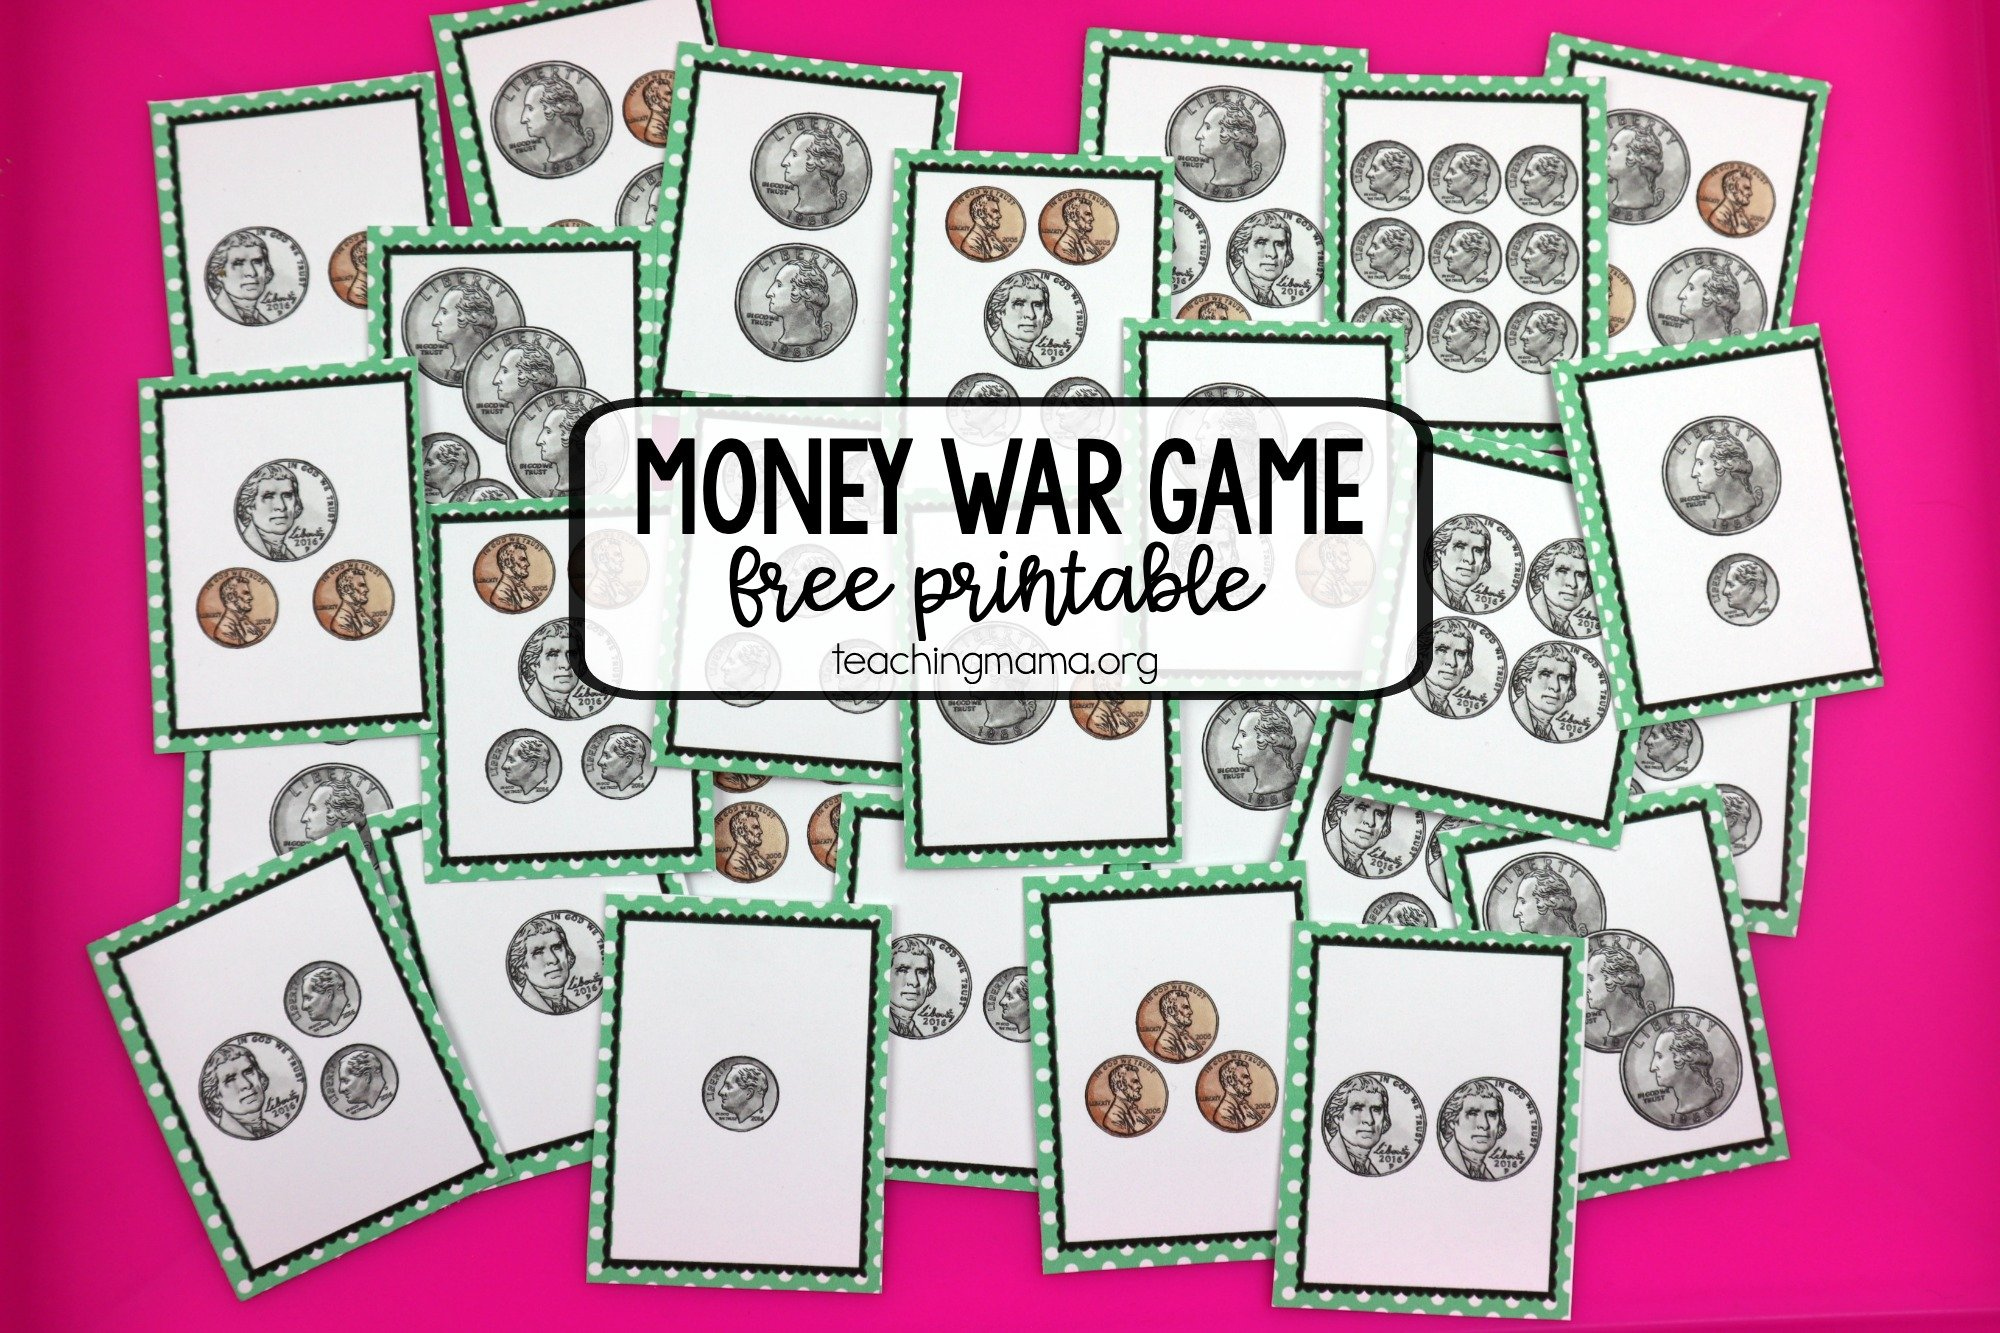 Money War Game - Teaching Mama with regard to Free Printable Game Money